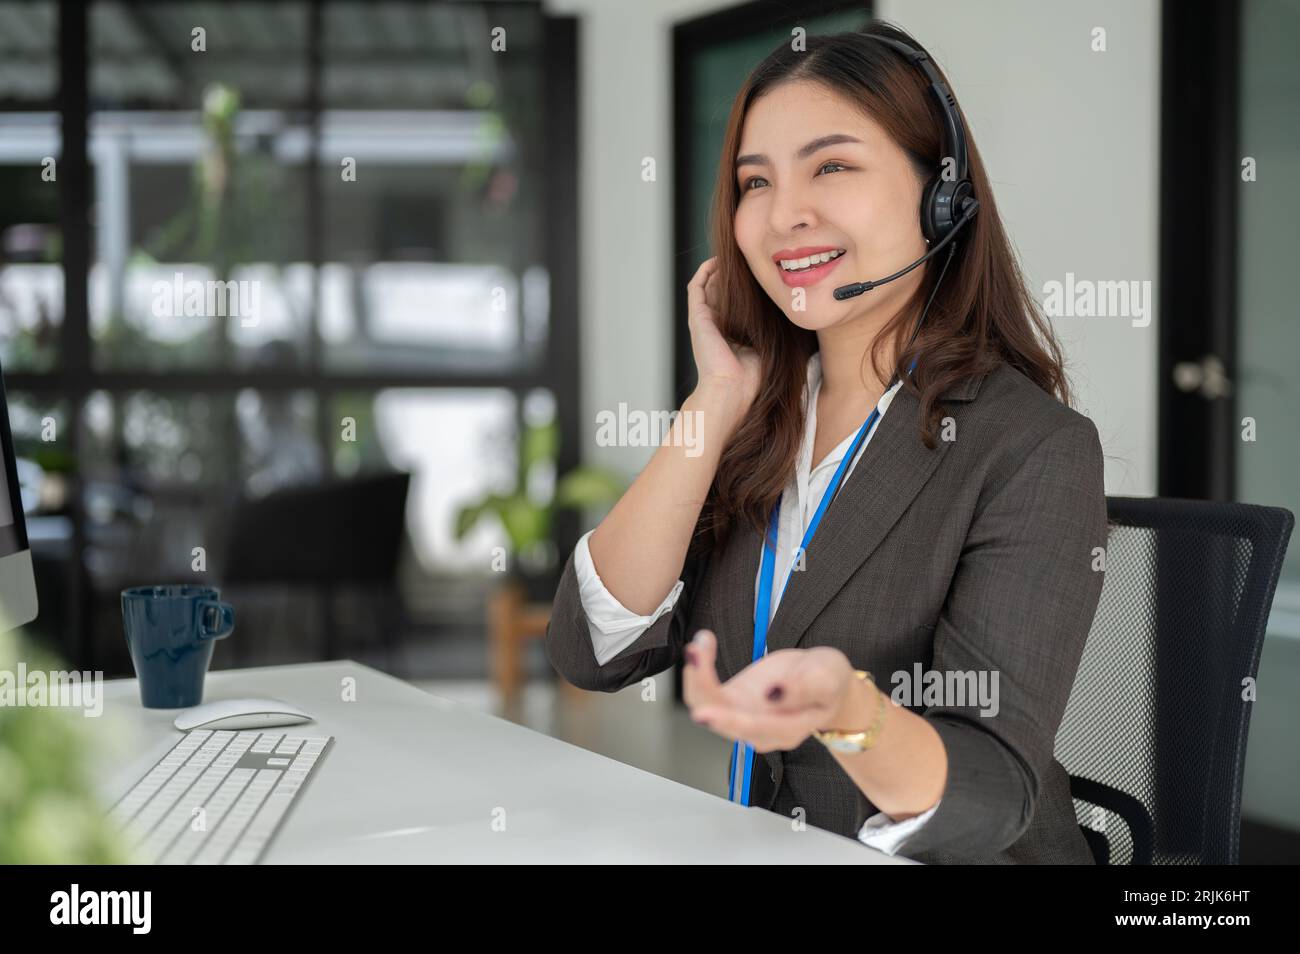 Une opératrice de centre d'appels asiatique professionnelle et charmante avec un micro-casque travaille à son bureau, conseille et fournit une expérience client positive Banque D'Images